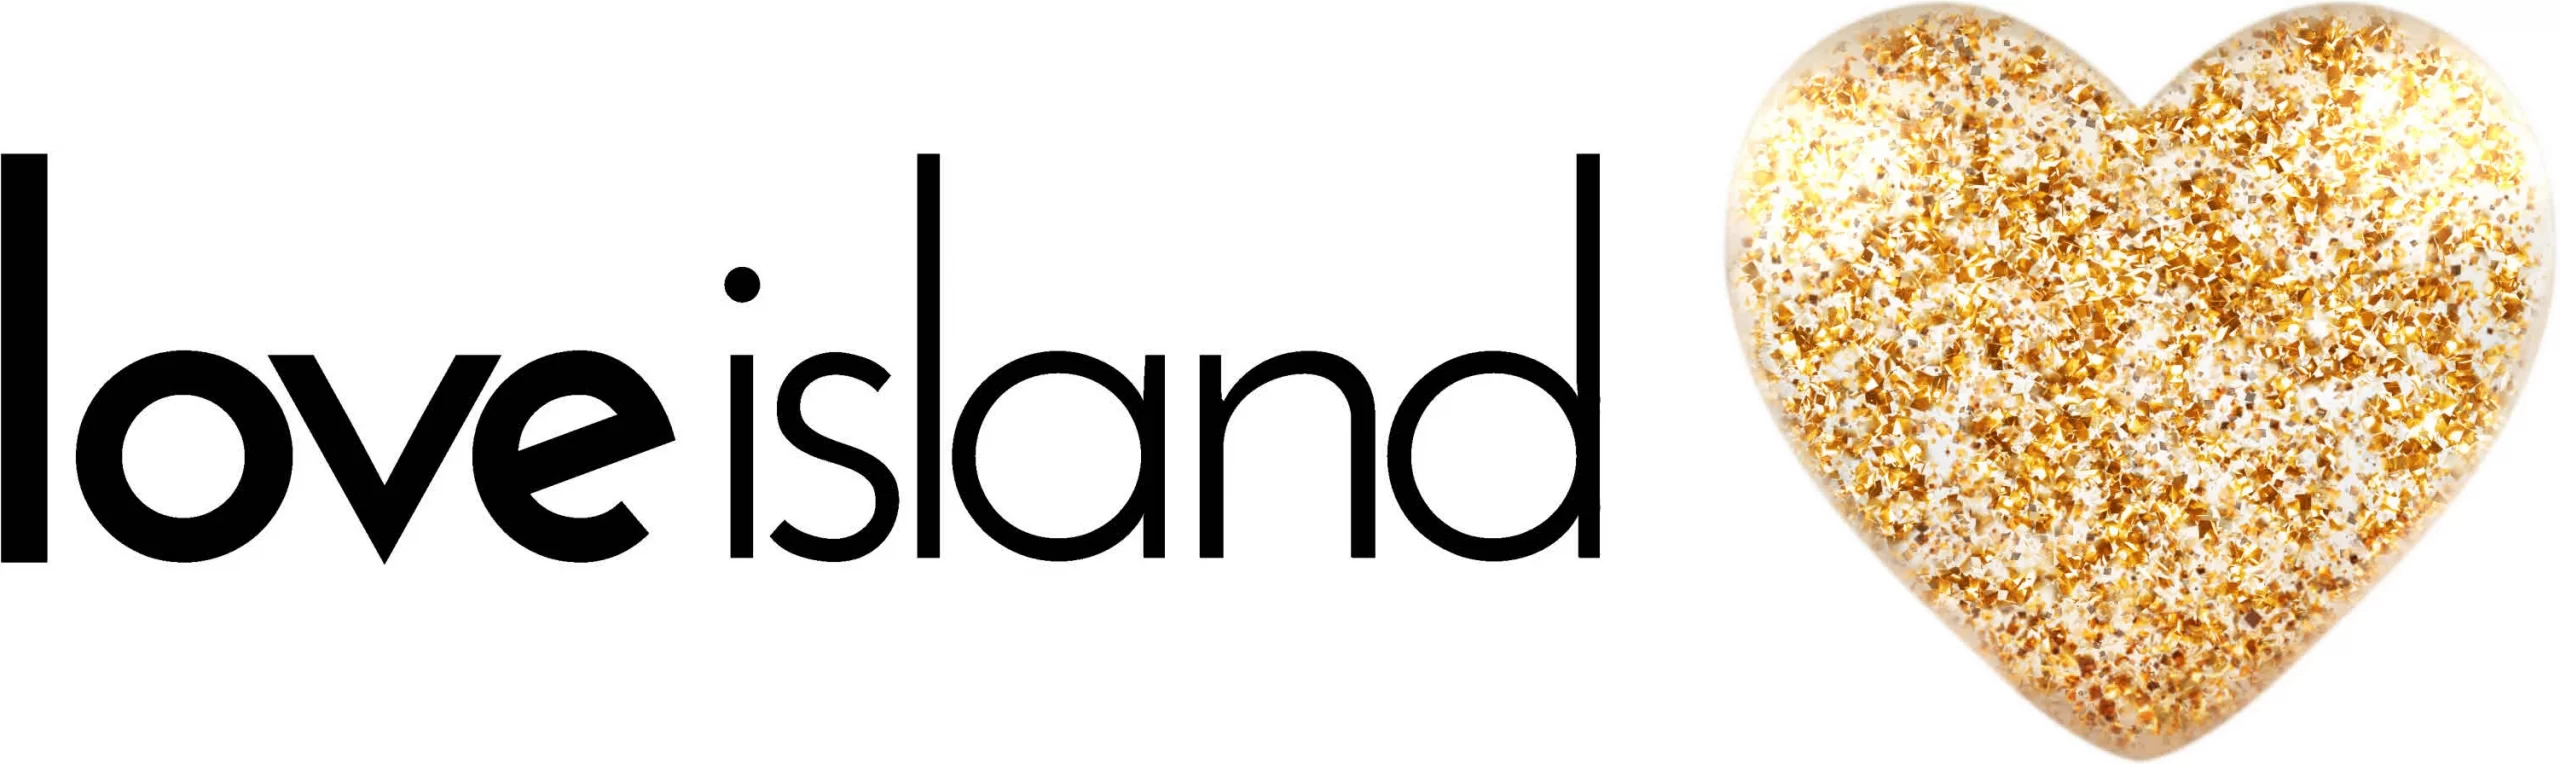 Love island logo